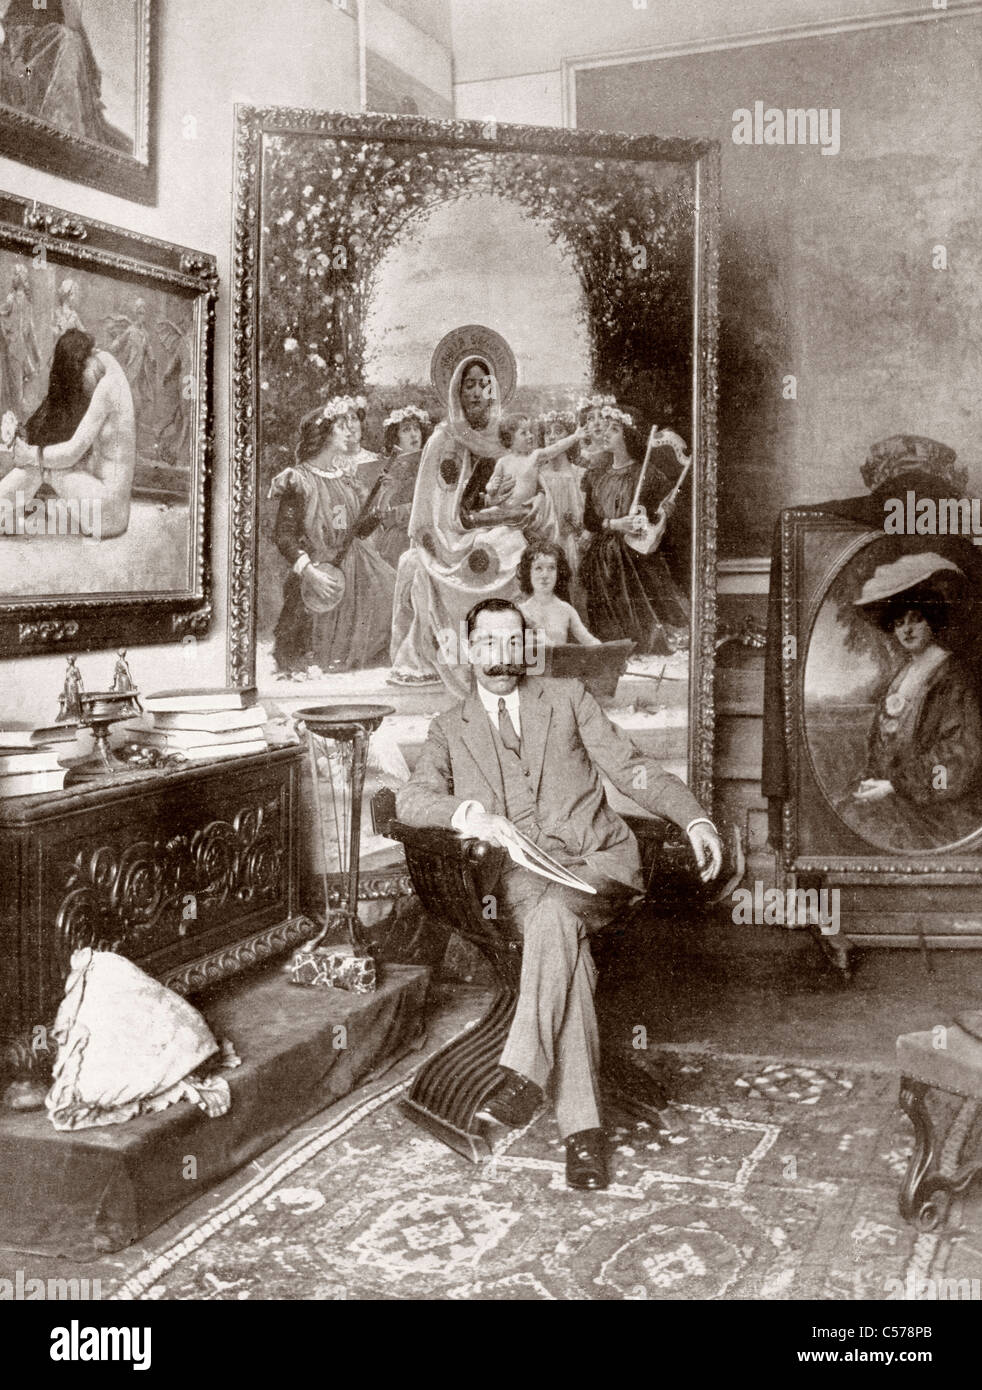 Pedro Sáenz Sáenz, 1863-1927. Präraffaelitische Bruderschaft spanische Maler, hier im Atelier Malaga gesehen. Stockfoto